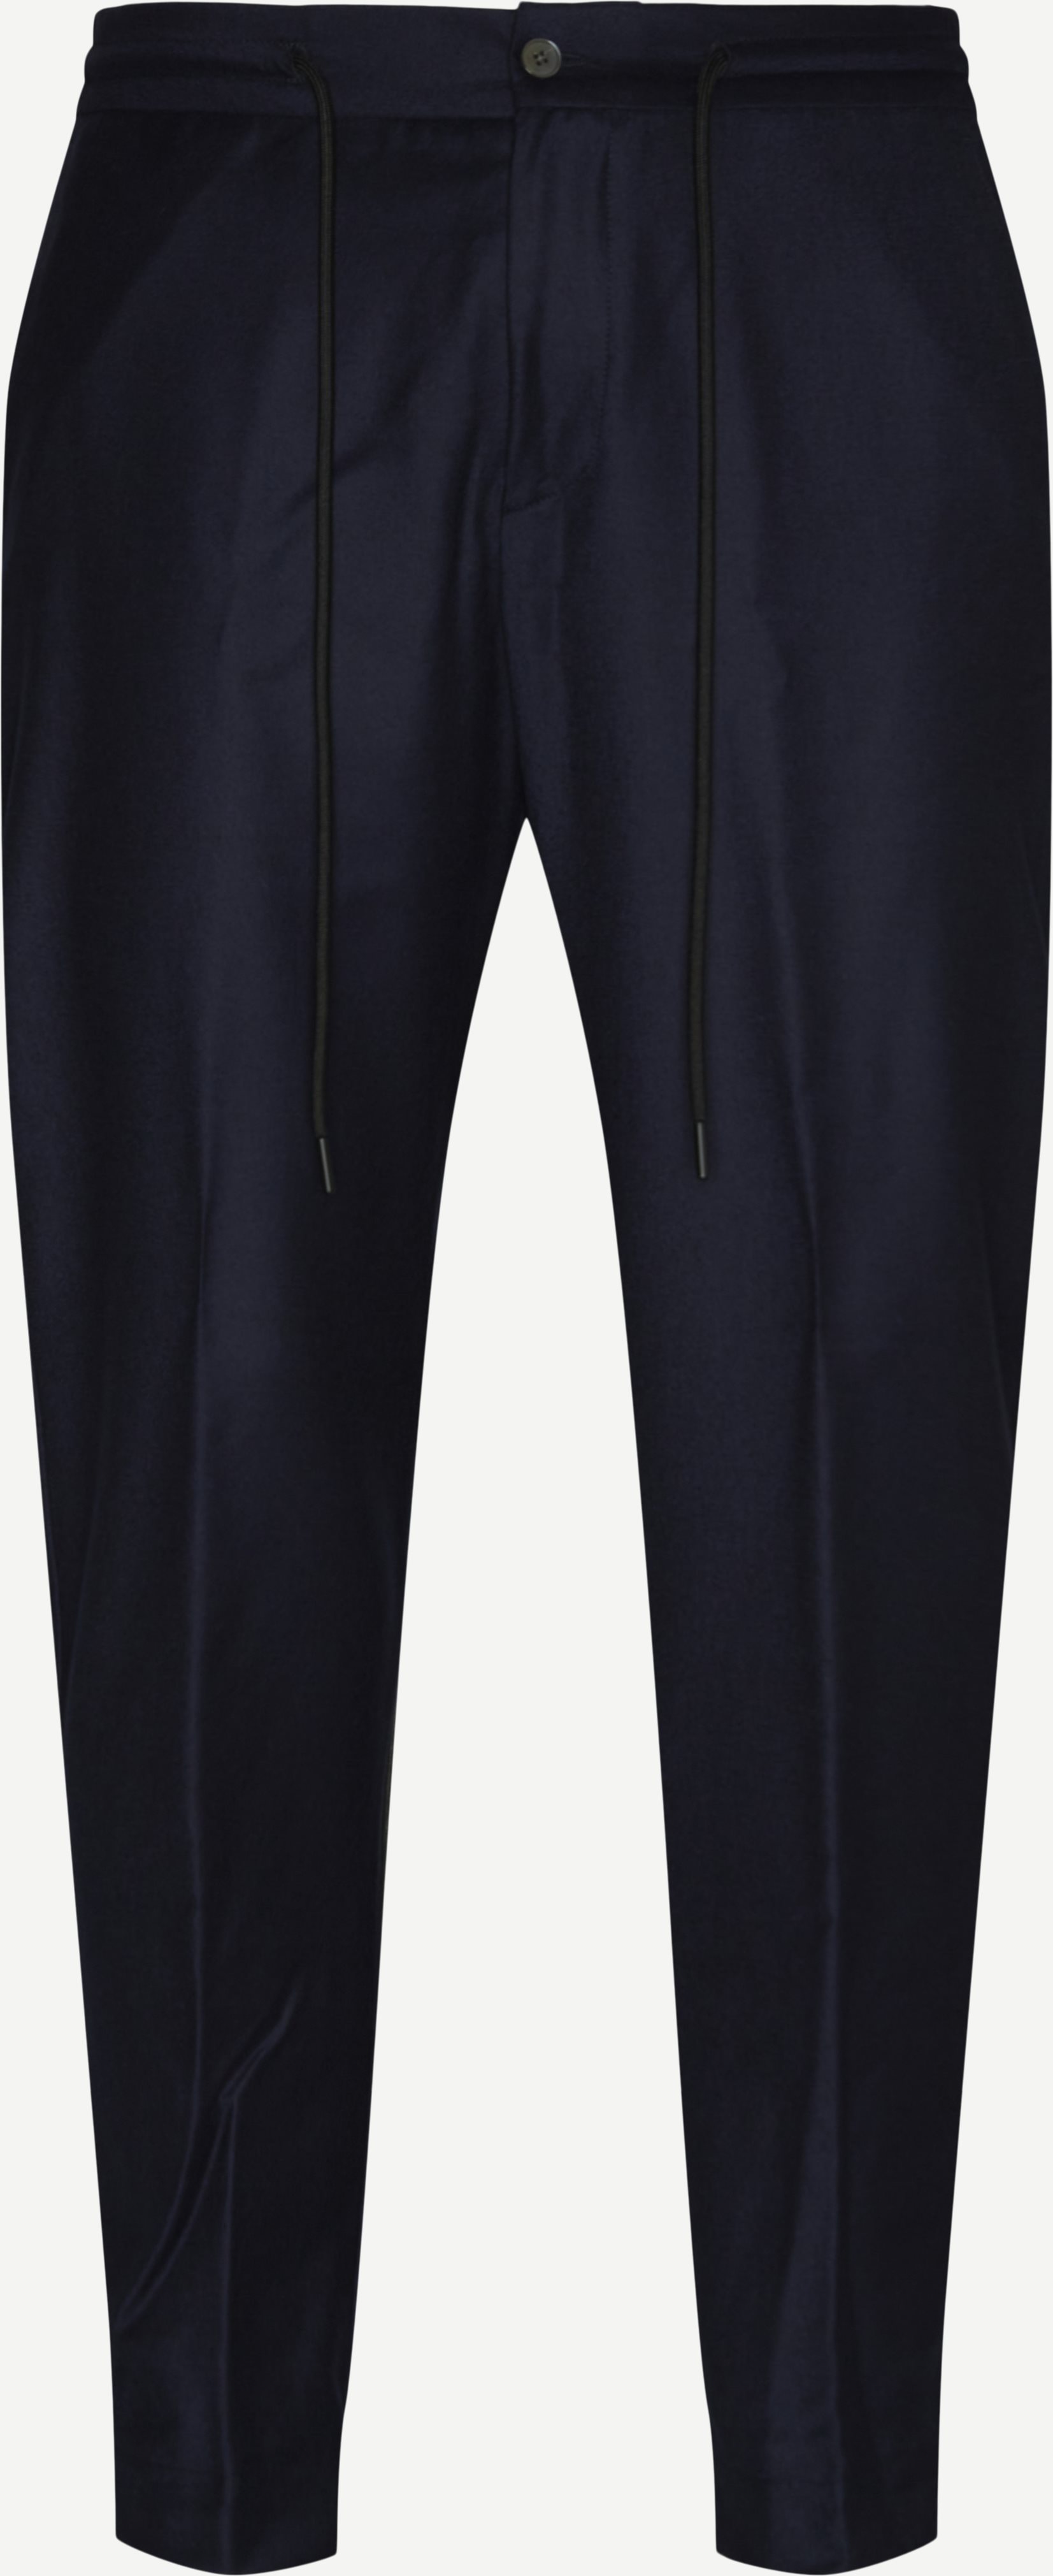 Pantalone Zero Gravity Bukser - Bukser - Slim fit - Blå